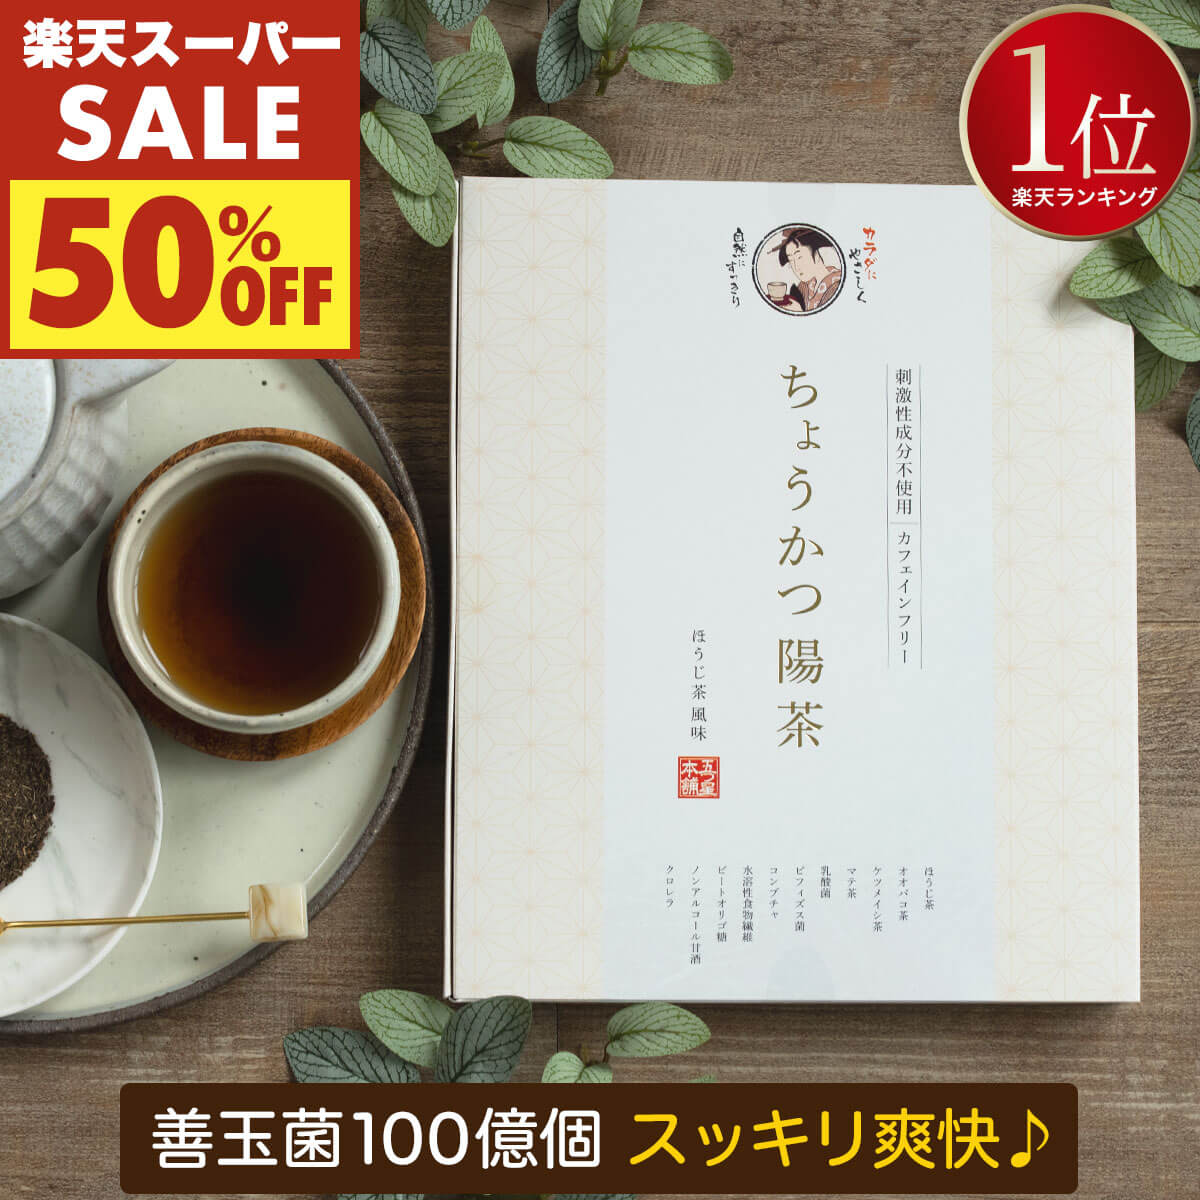 エステプロラボ Gデトックハーブティー 4gx30包 ダイエット紅茶 日本製 Gデトック 紅茶 ブランド茶 排出系茶